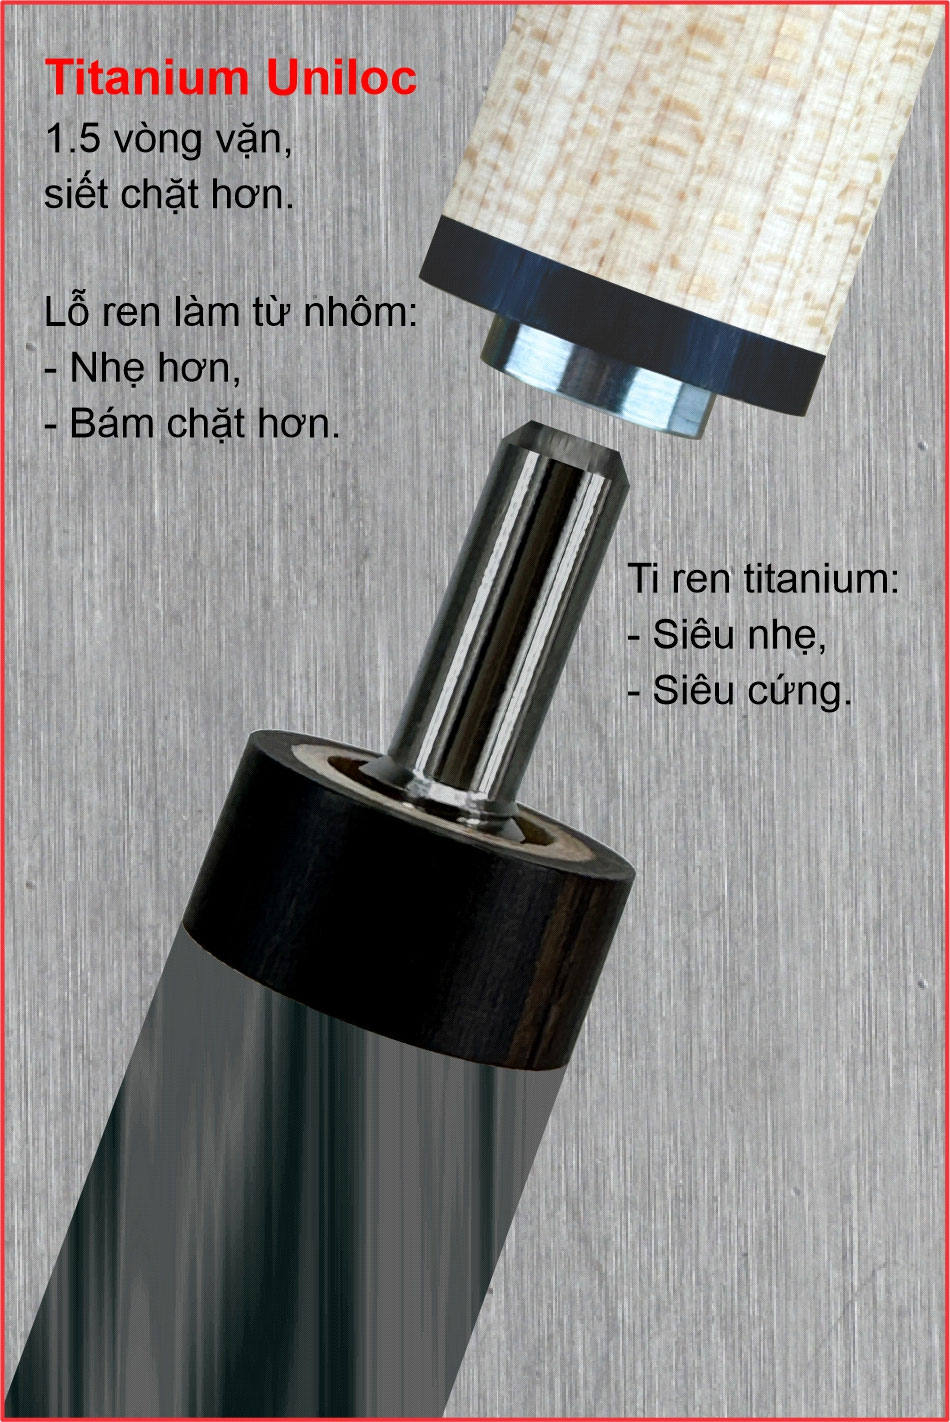 Ren titanium Uniloc